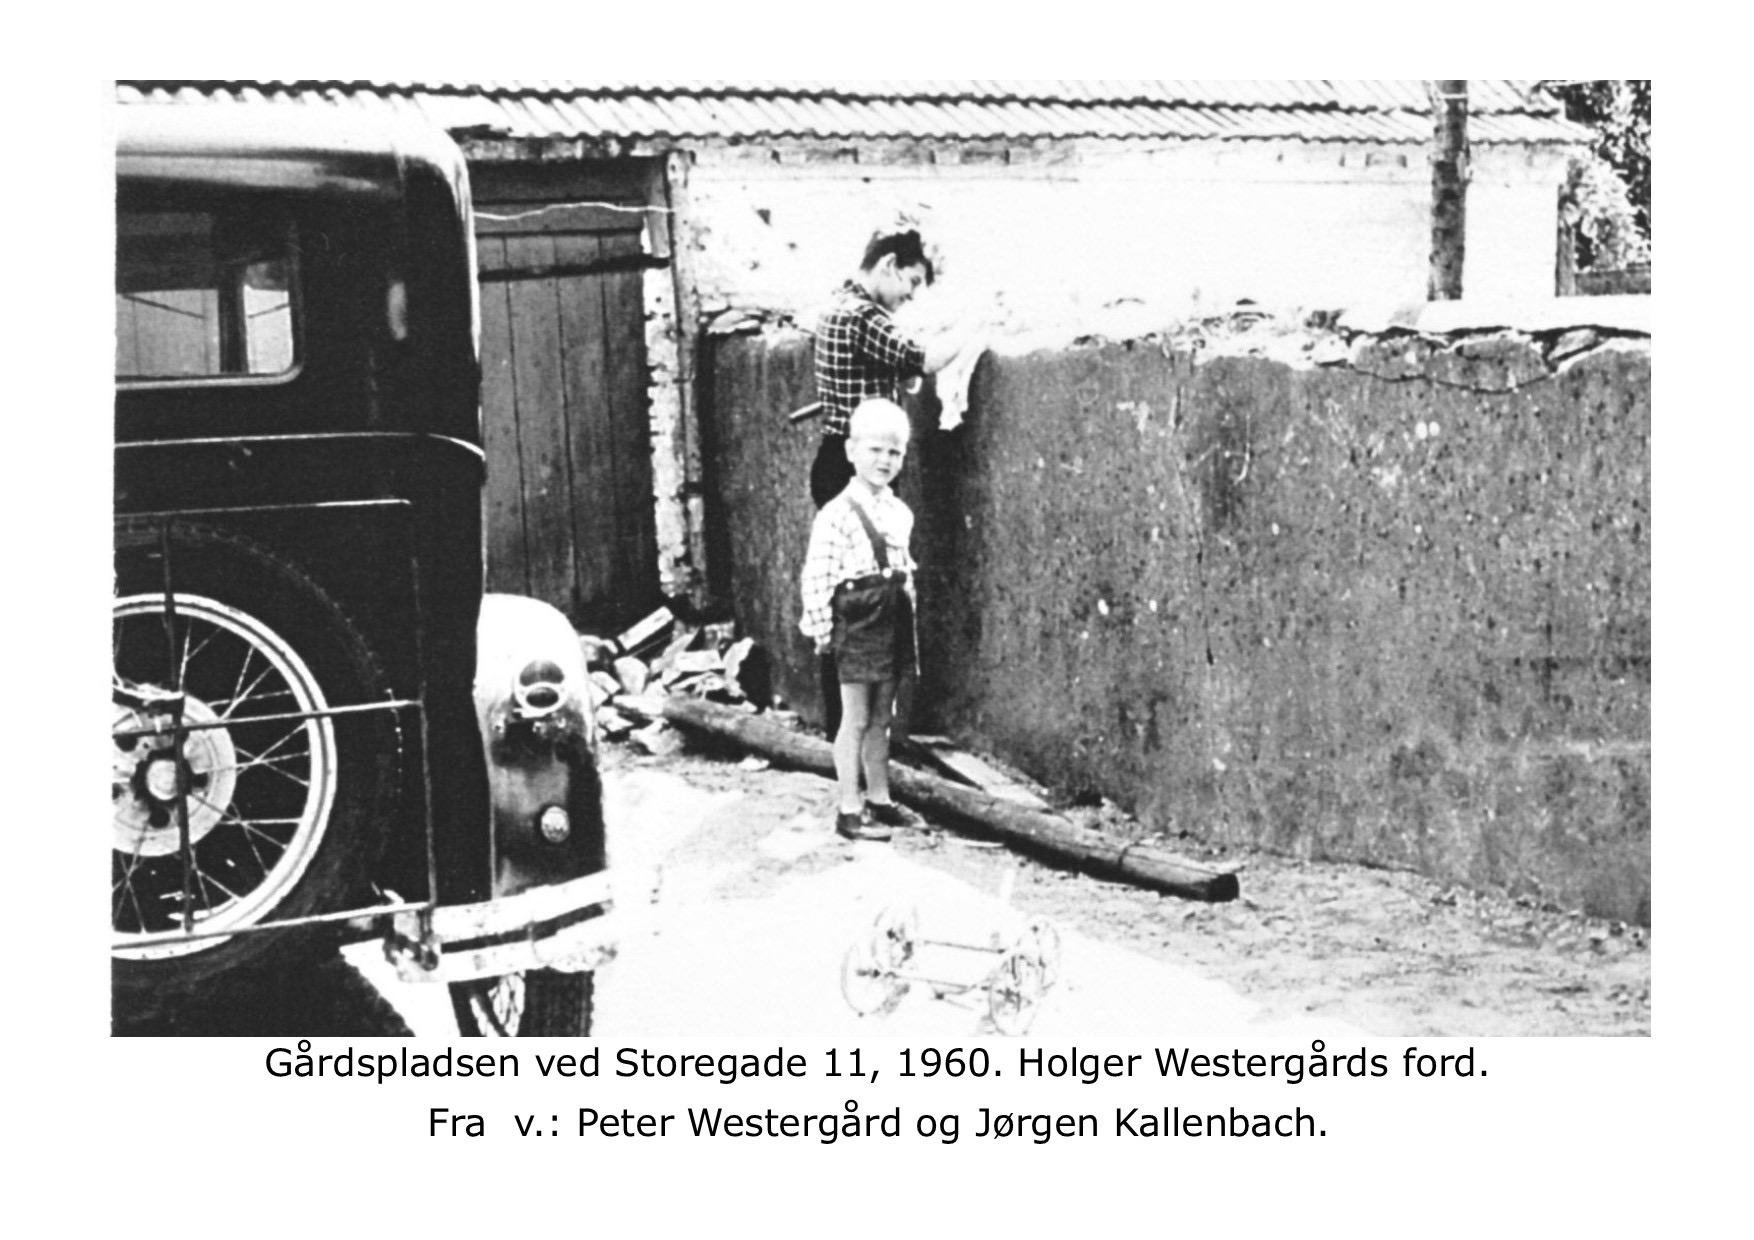 Peter Westergaard og Jørgen Kallenbach 1960 